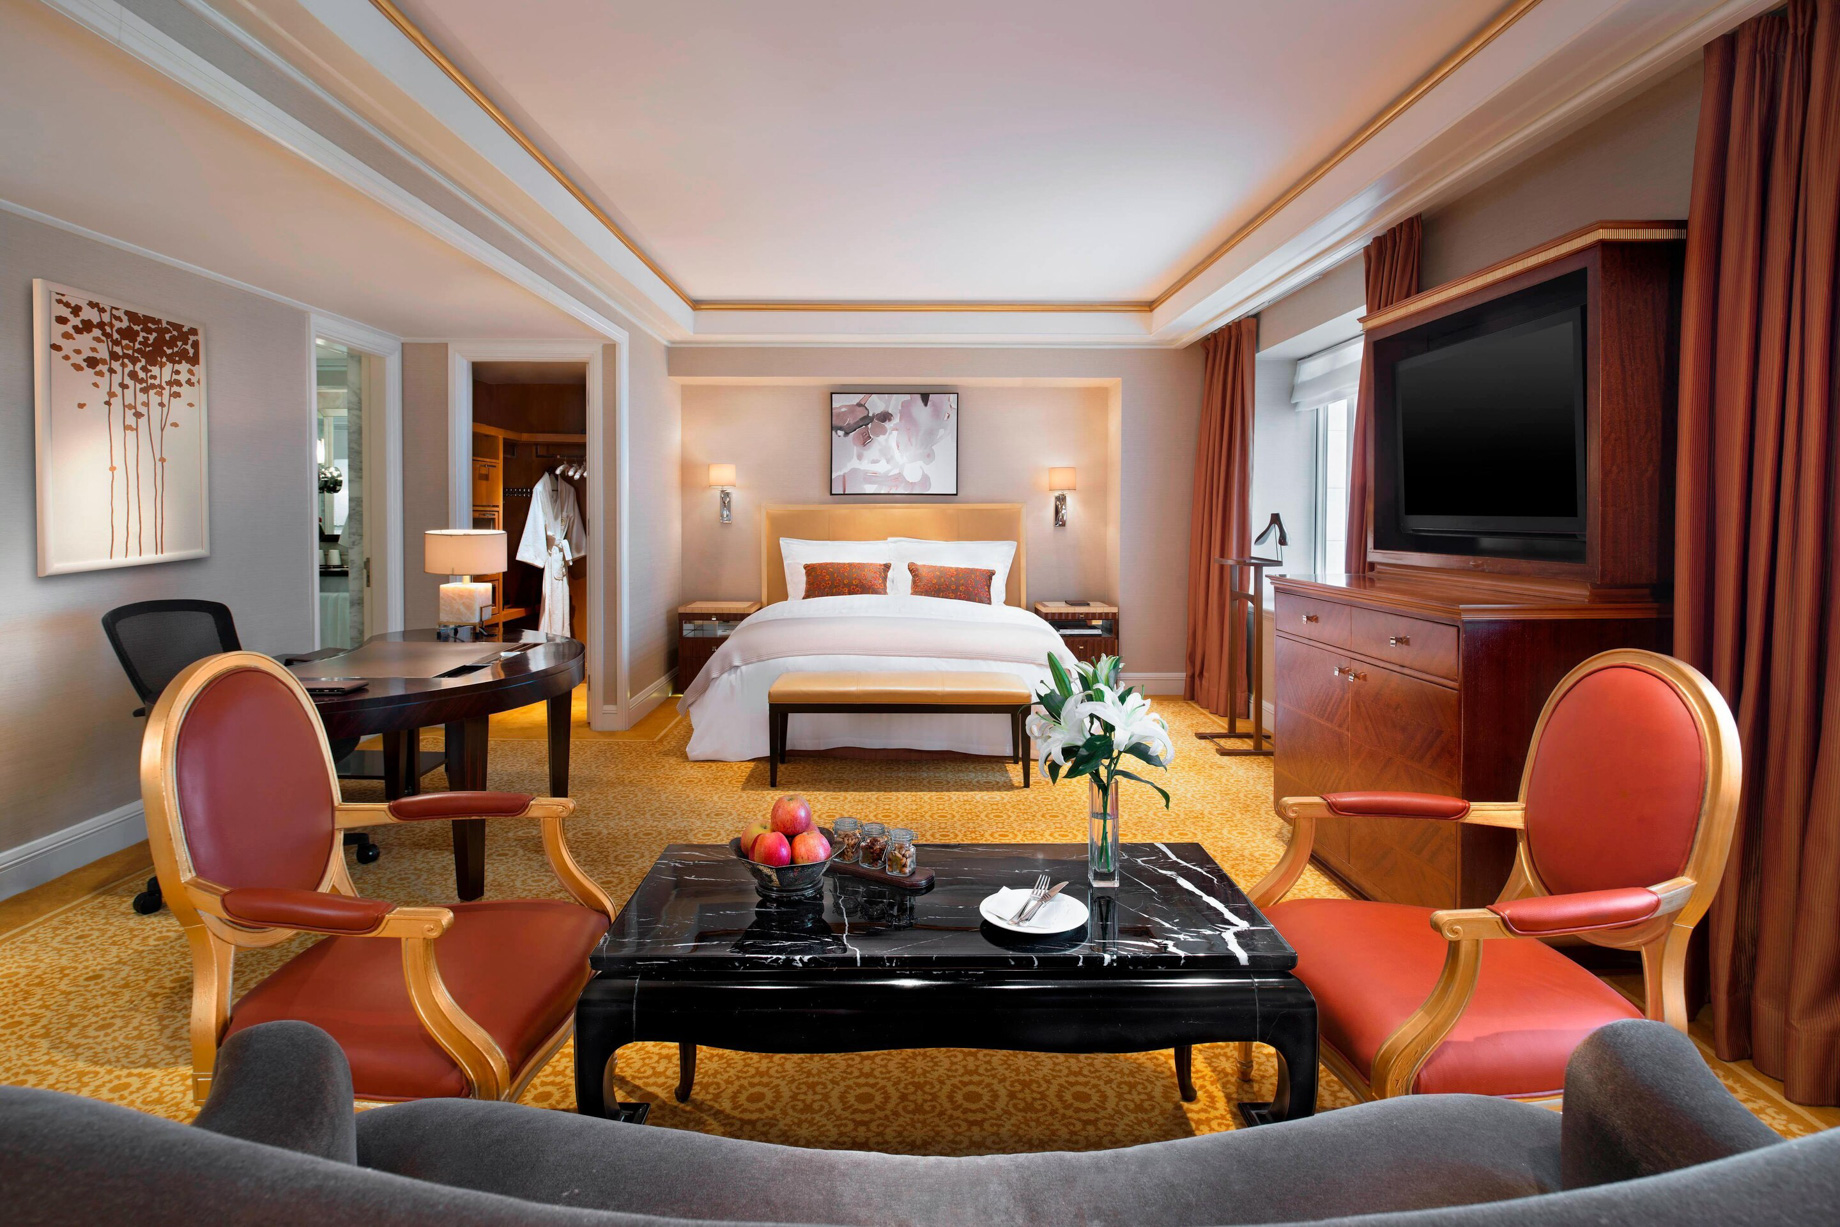 The St. Regis Beijing Hotel - Beijing, China - Diplomat Deluxe Room